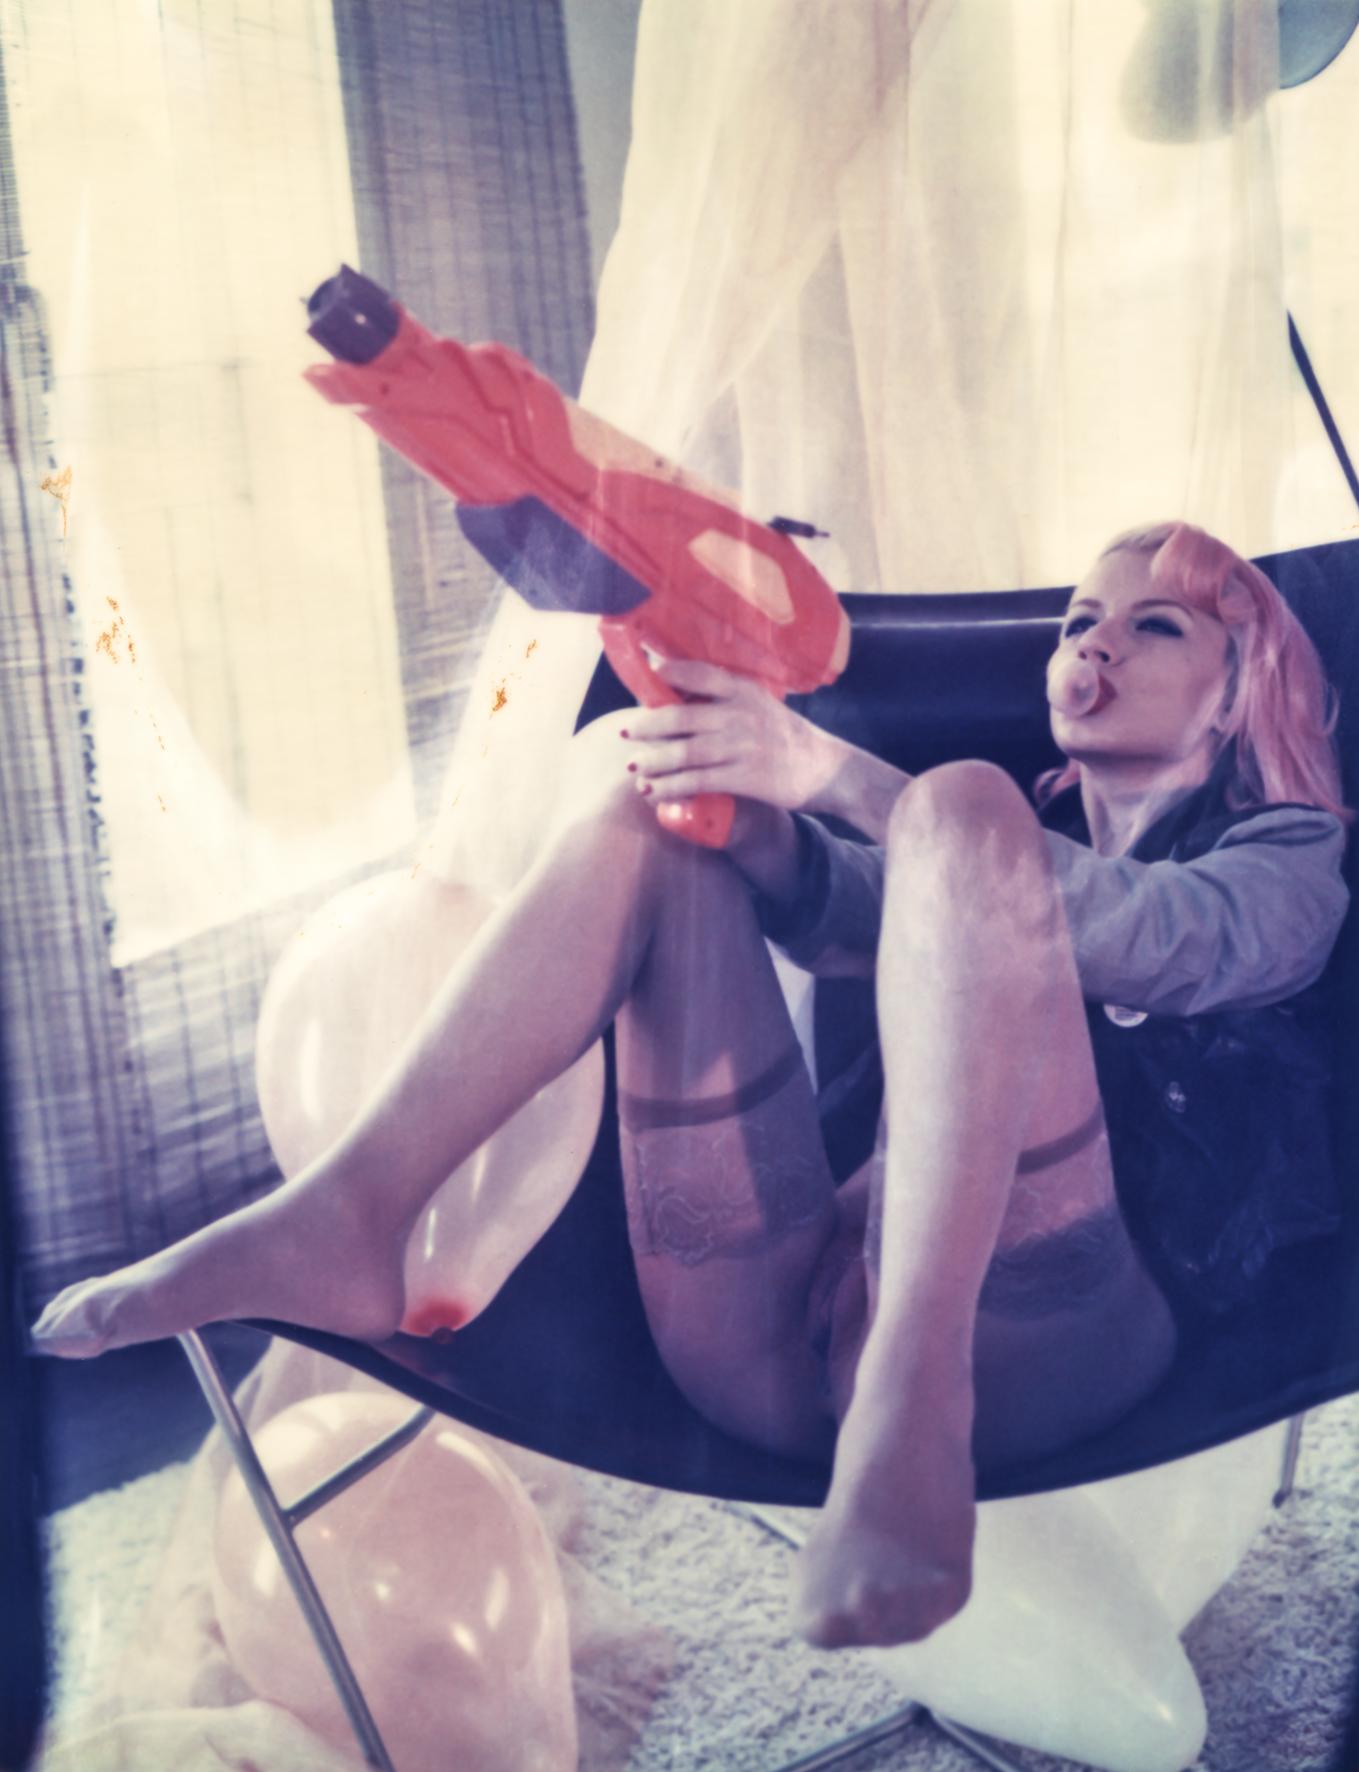 Carmen de Vos Nude Photograph – Bubble Gun #04 [Odd Stories] - Nackt, Polaroid, Fotografie, Contemporary